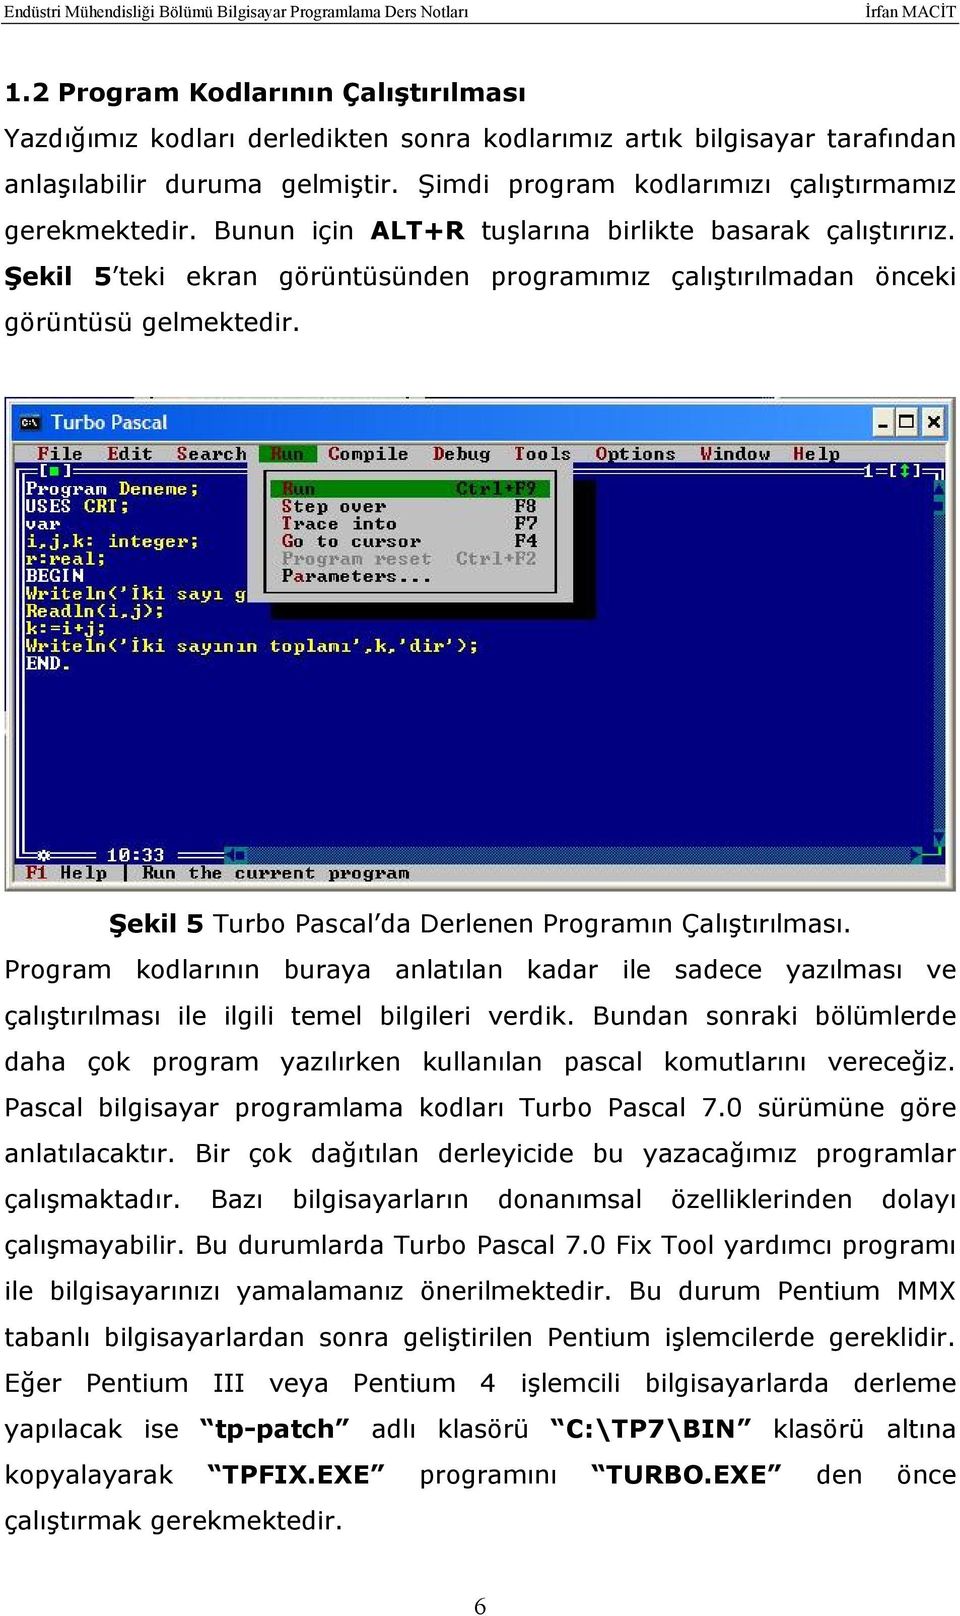 Şekil 5 Turbo Pascal da Derlenen Programın Çalıştırılması. Program kodlarının buraya anlatılan kadar ile sadece yazılması ve çalıştırılması ile ilgili temel bilgileri verdik.